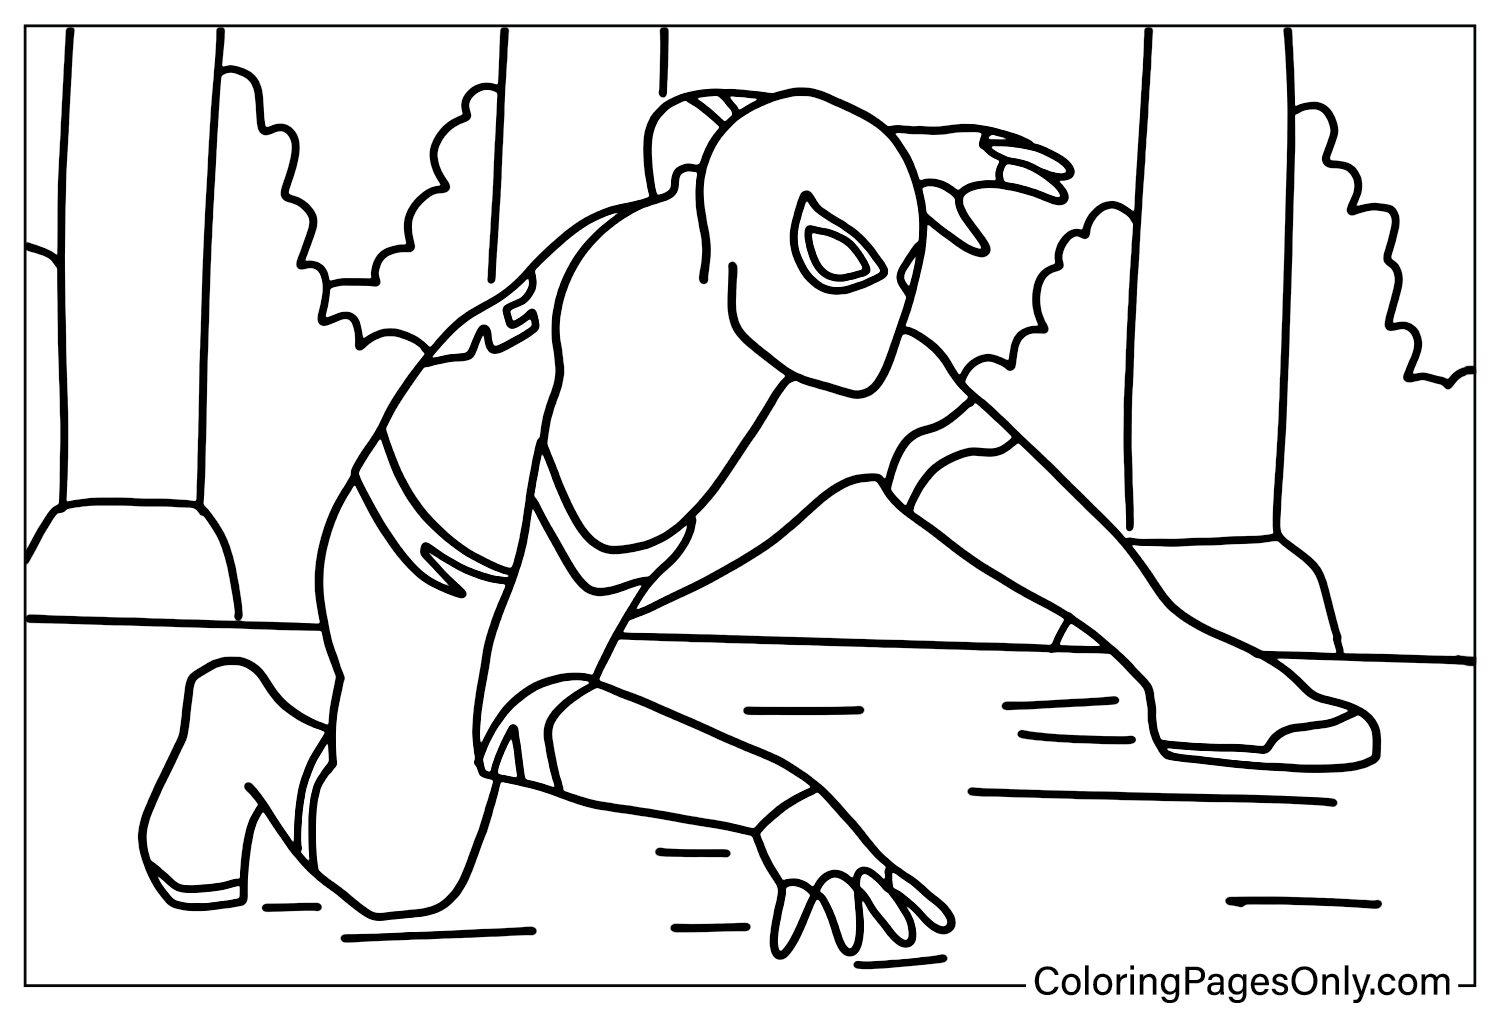 Kleurplaat Spider-Man Far From Home Gratis van Spider-Man Far From Home